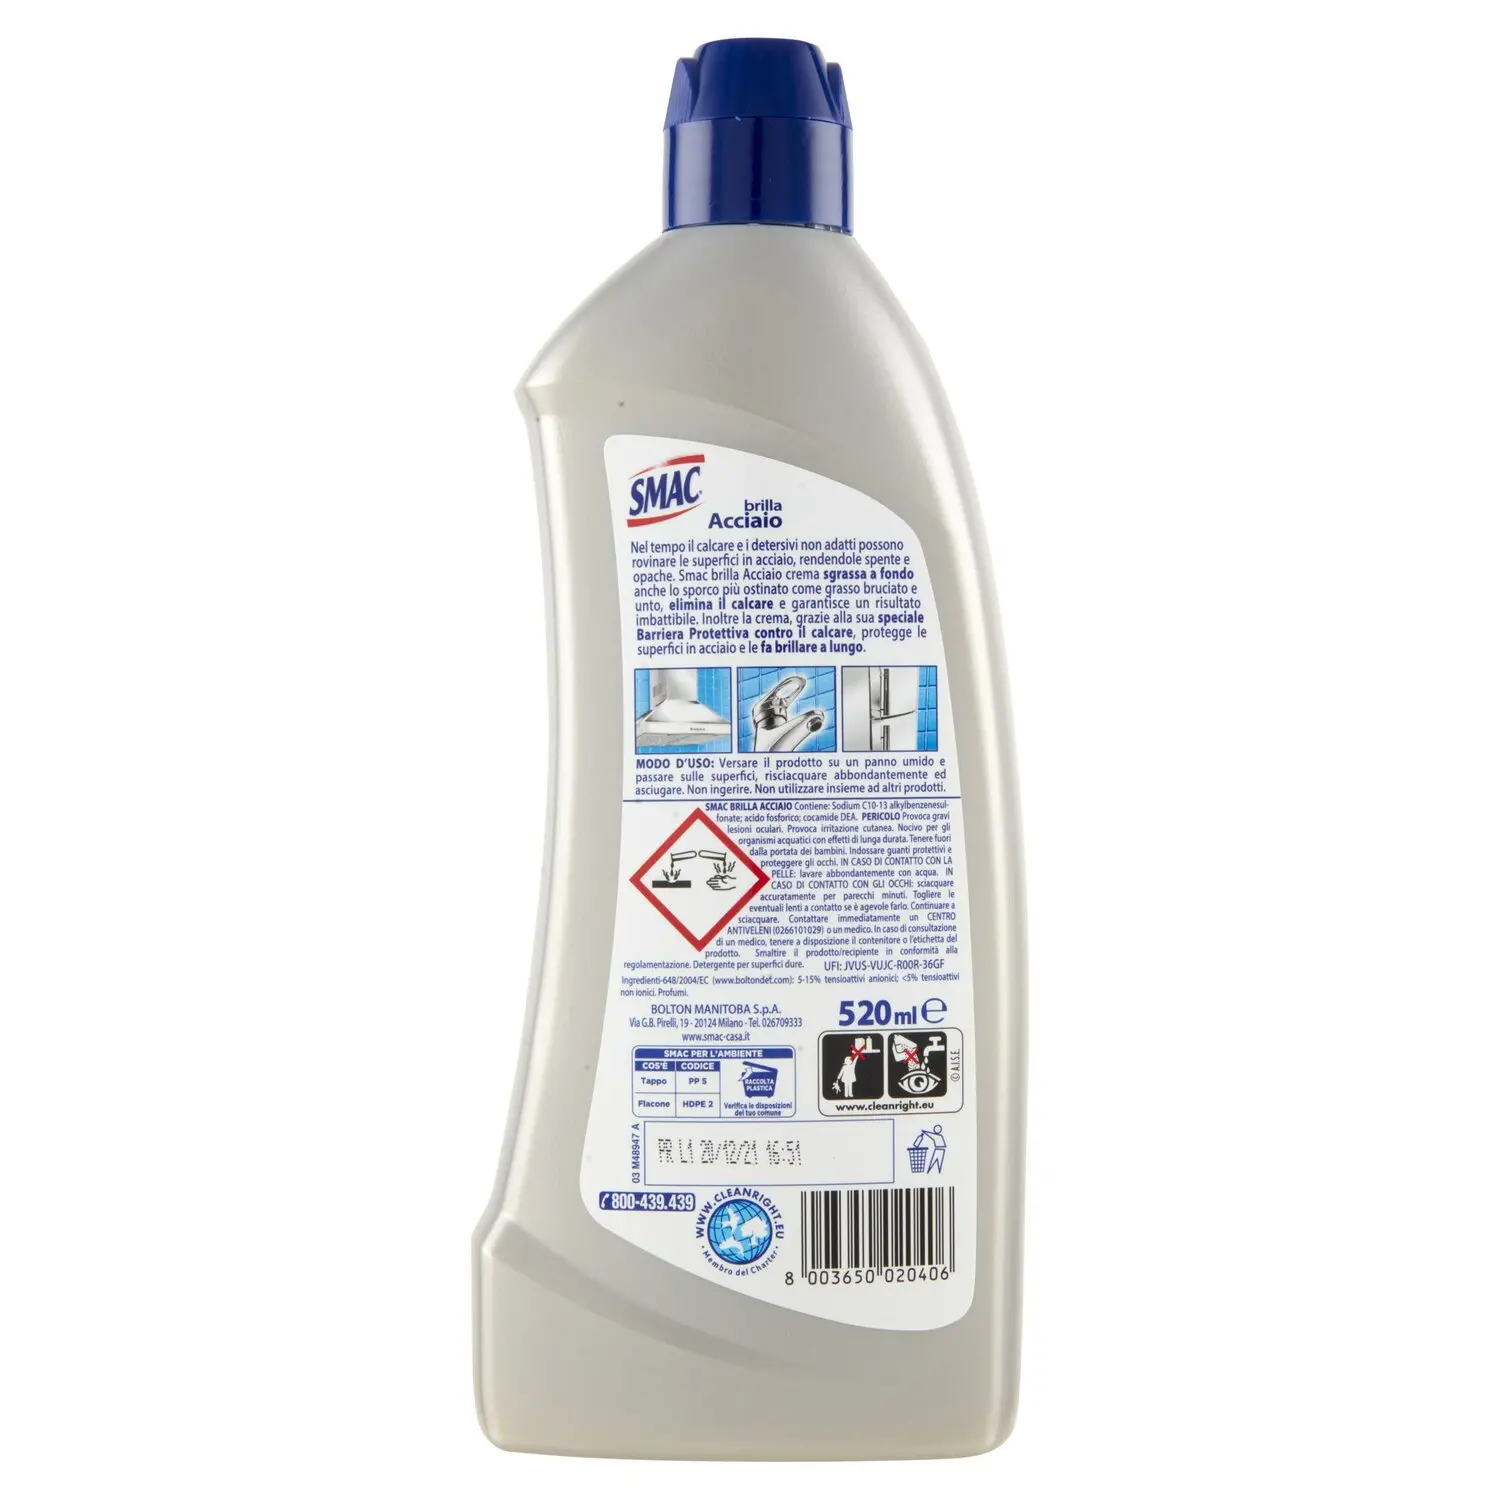 Smac - Brilla Acciaio Crema, Detergente per Superfici in Acciaio, Azione  Lucidante 520 ml